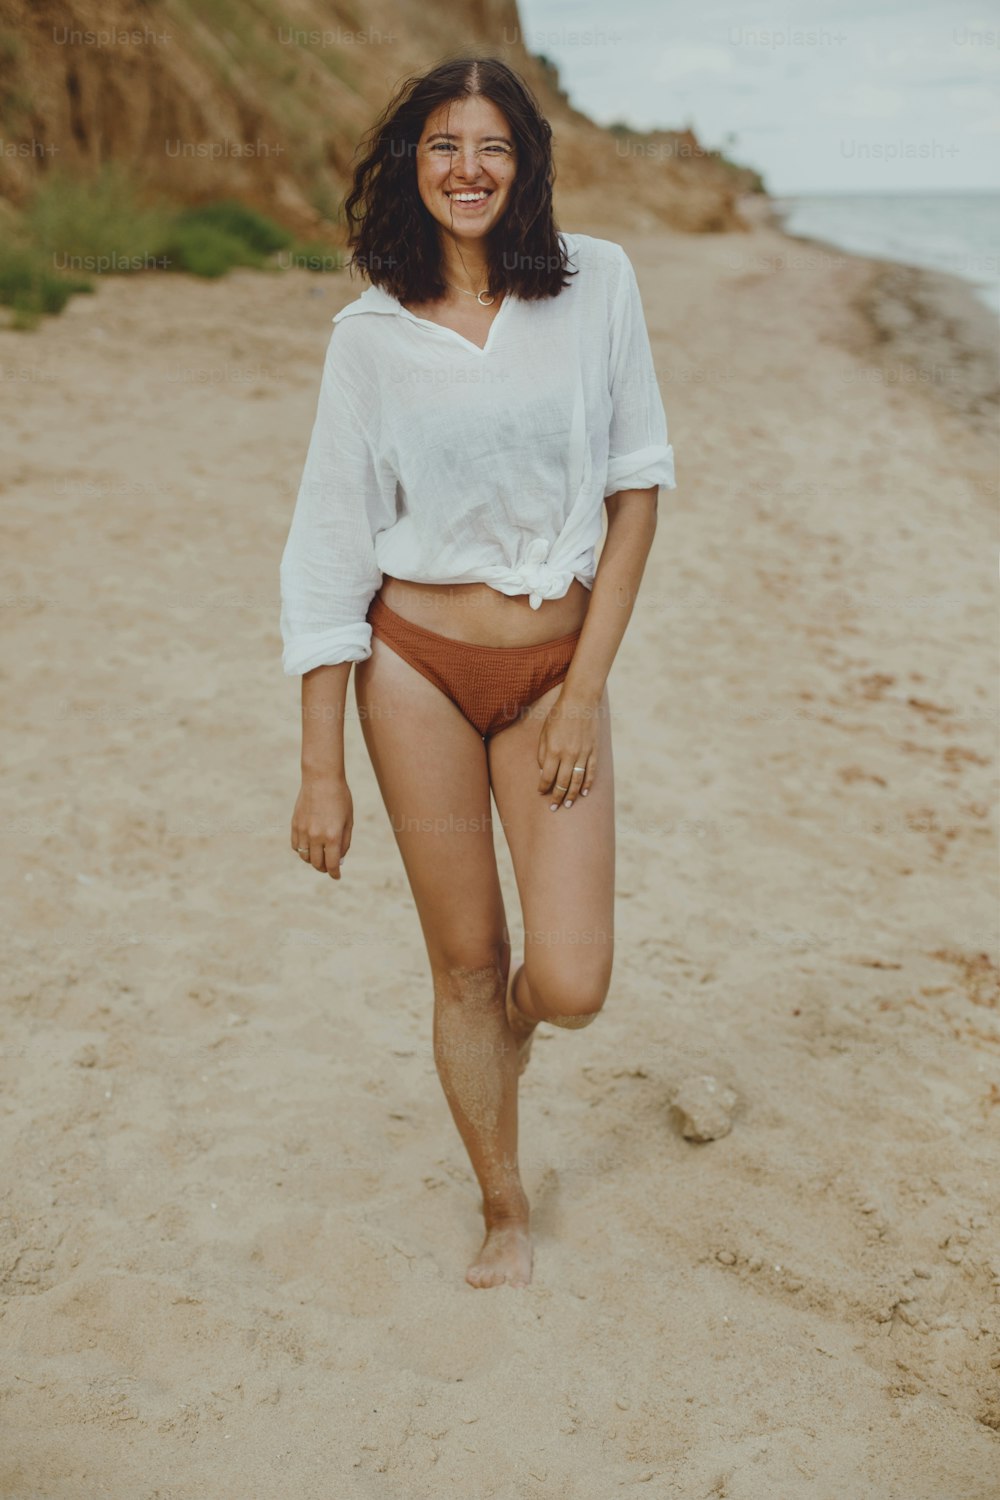 Glückliches Boho-Mädchen im weißen Hemd am sonnigen Strand spazieren gehend. Unbeschwerte stilvolle Frau in Badeanzug und Hemd entspannt sich am Meer. Sommerferien. Authentisches Lifestyle-Image